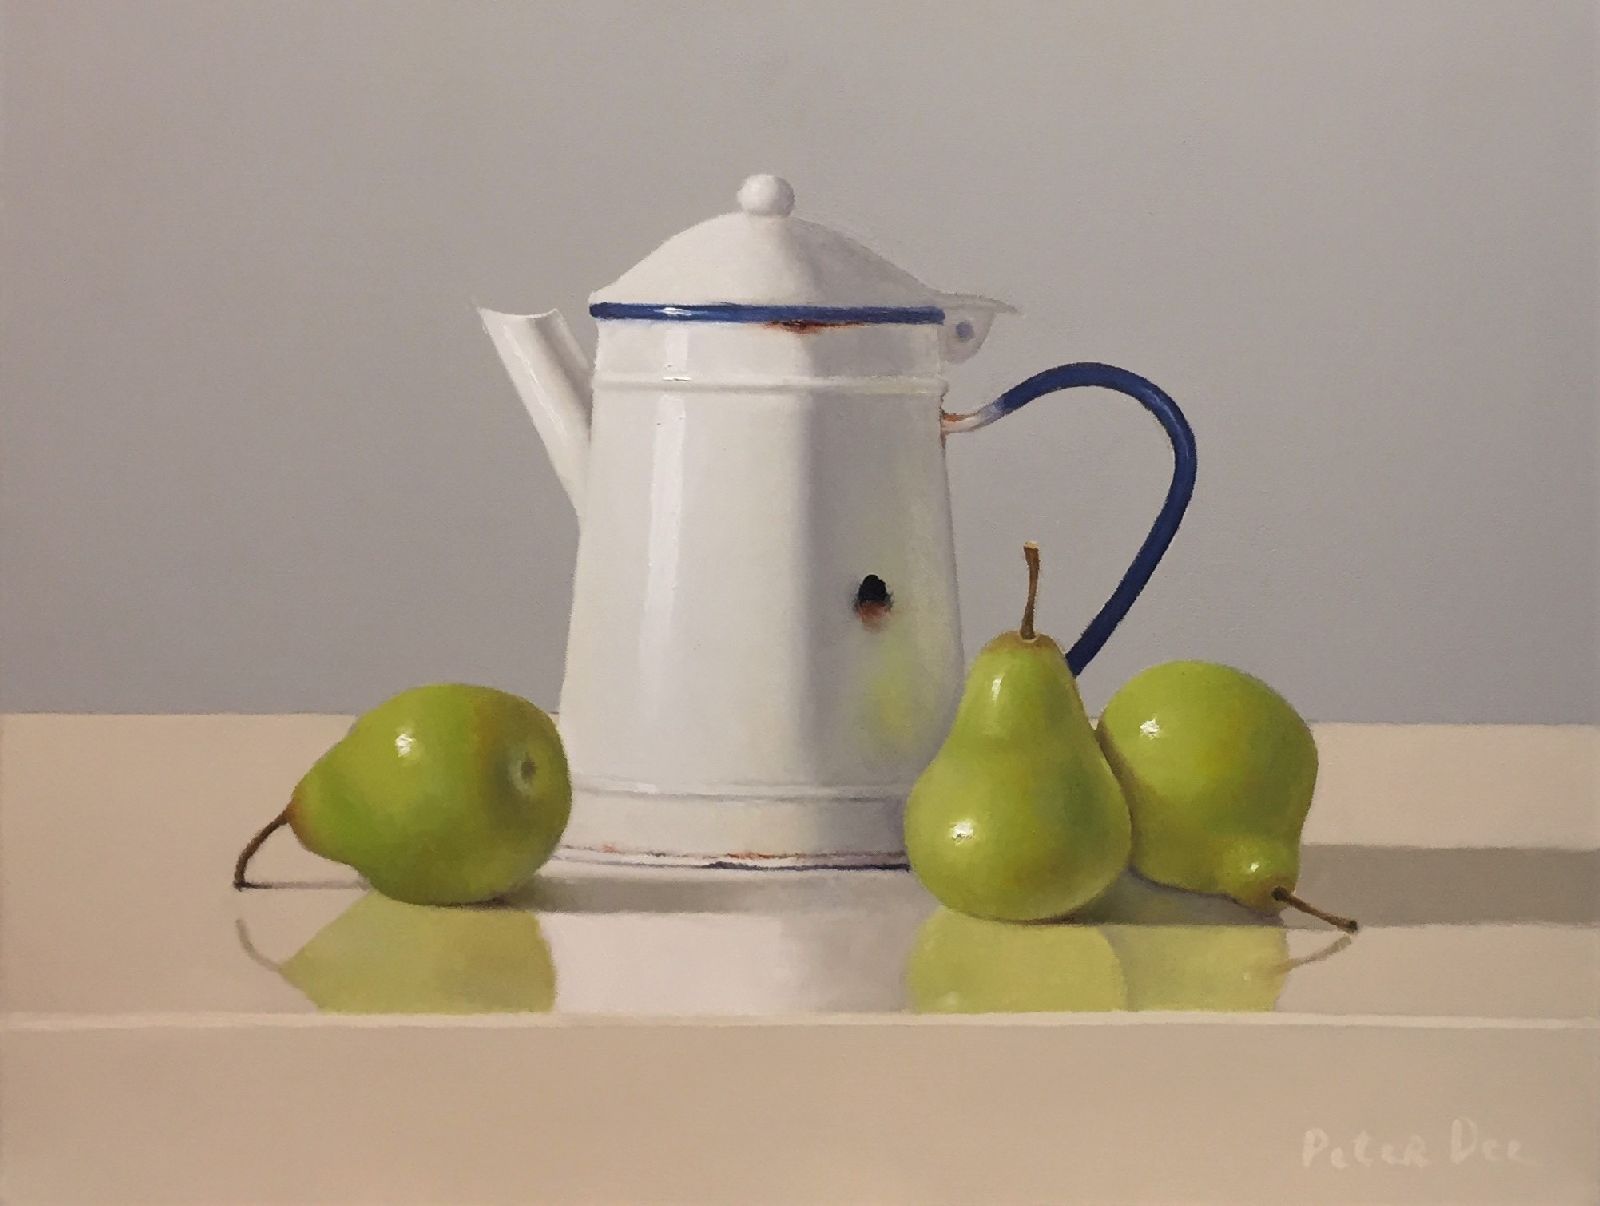 Peter Dee - Vintage Enamelware with Pears